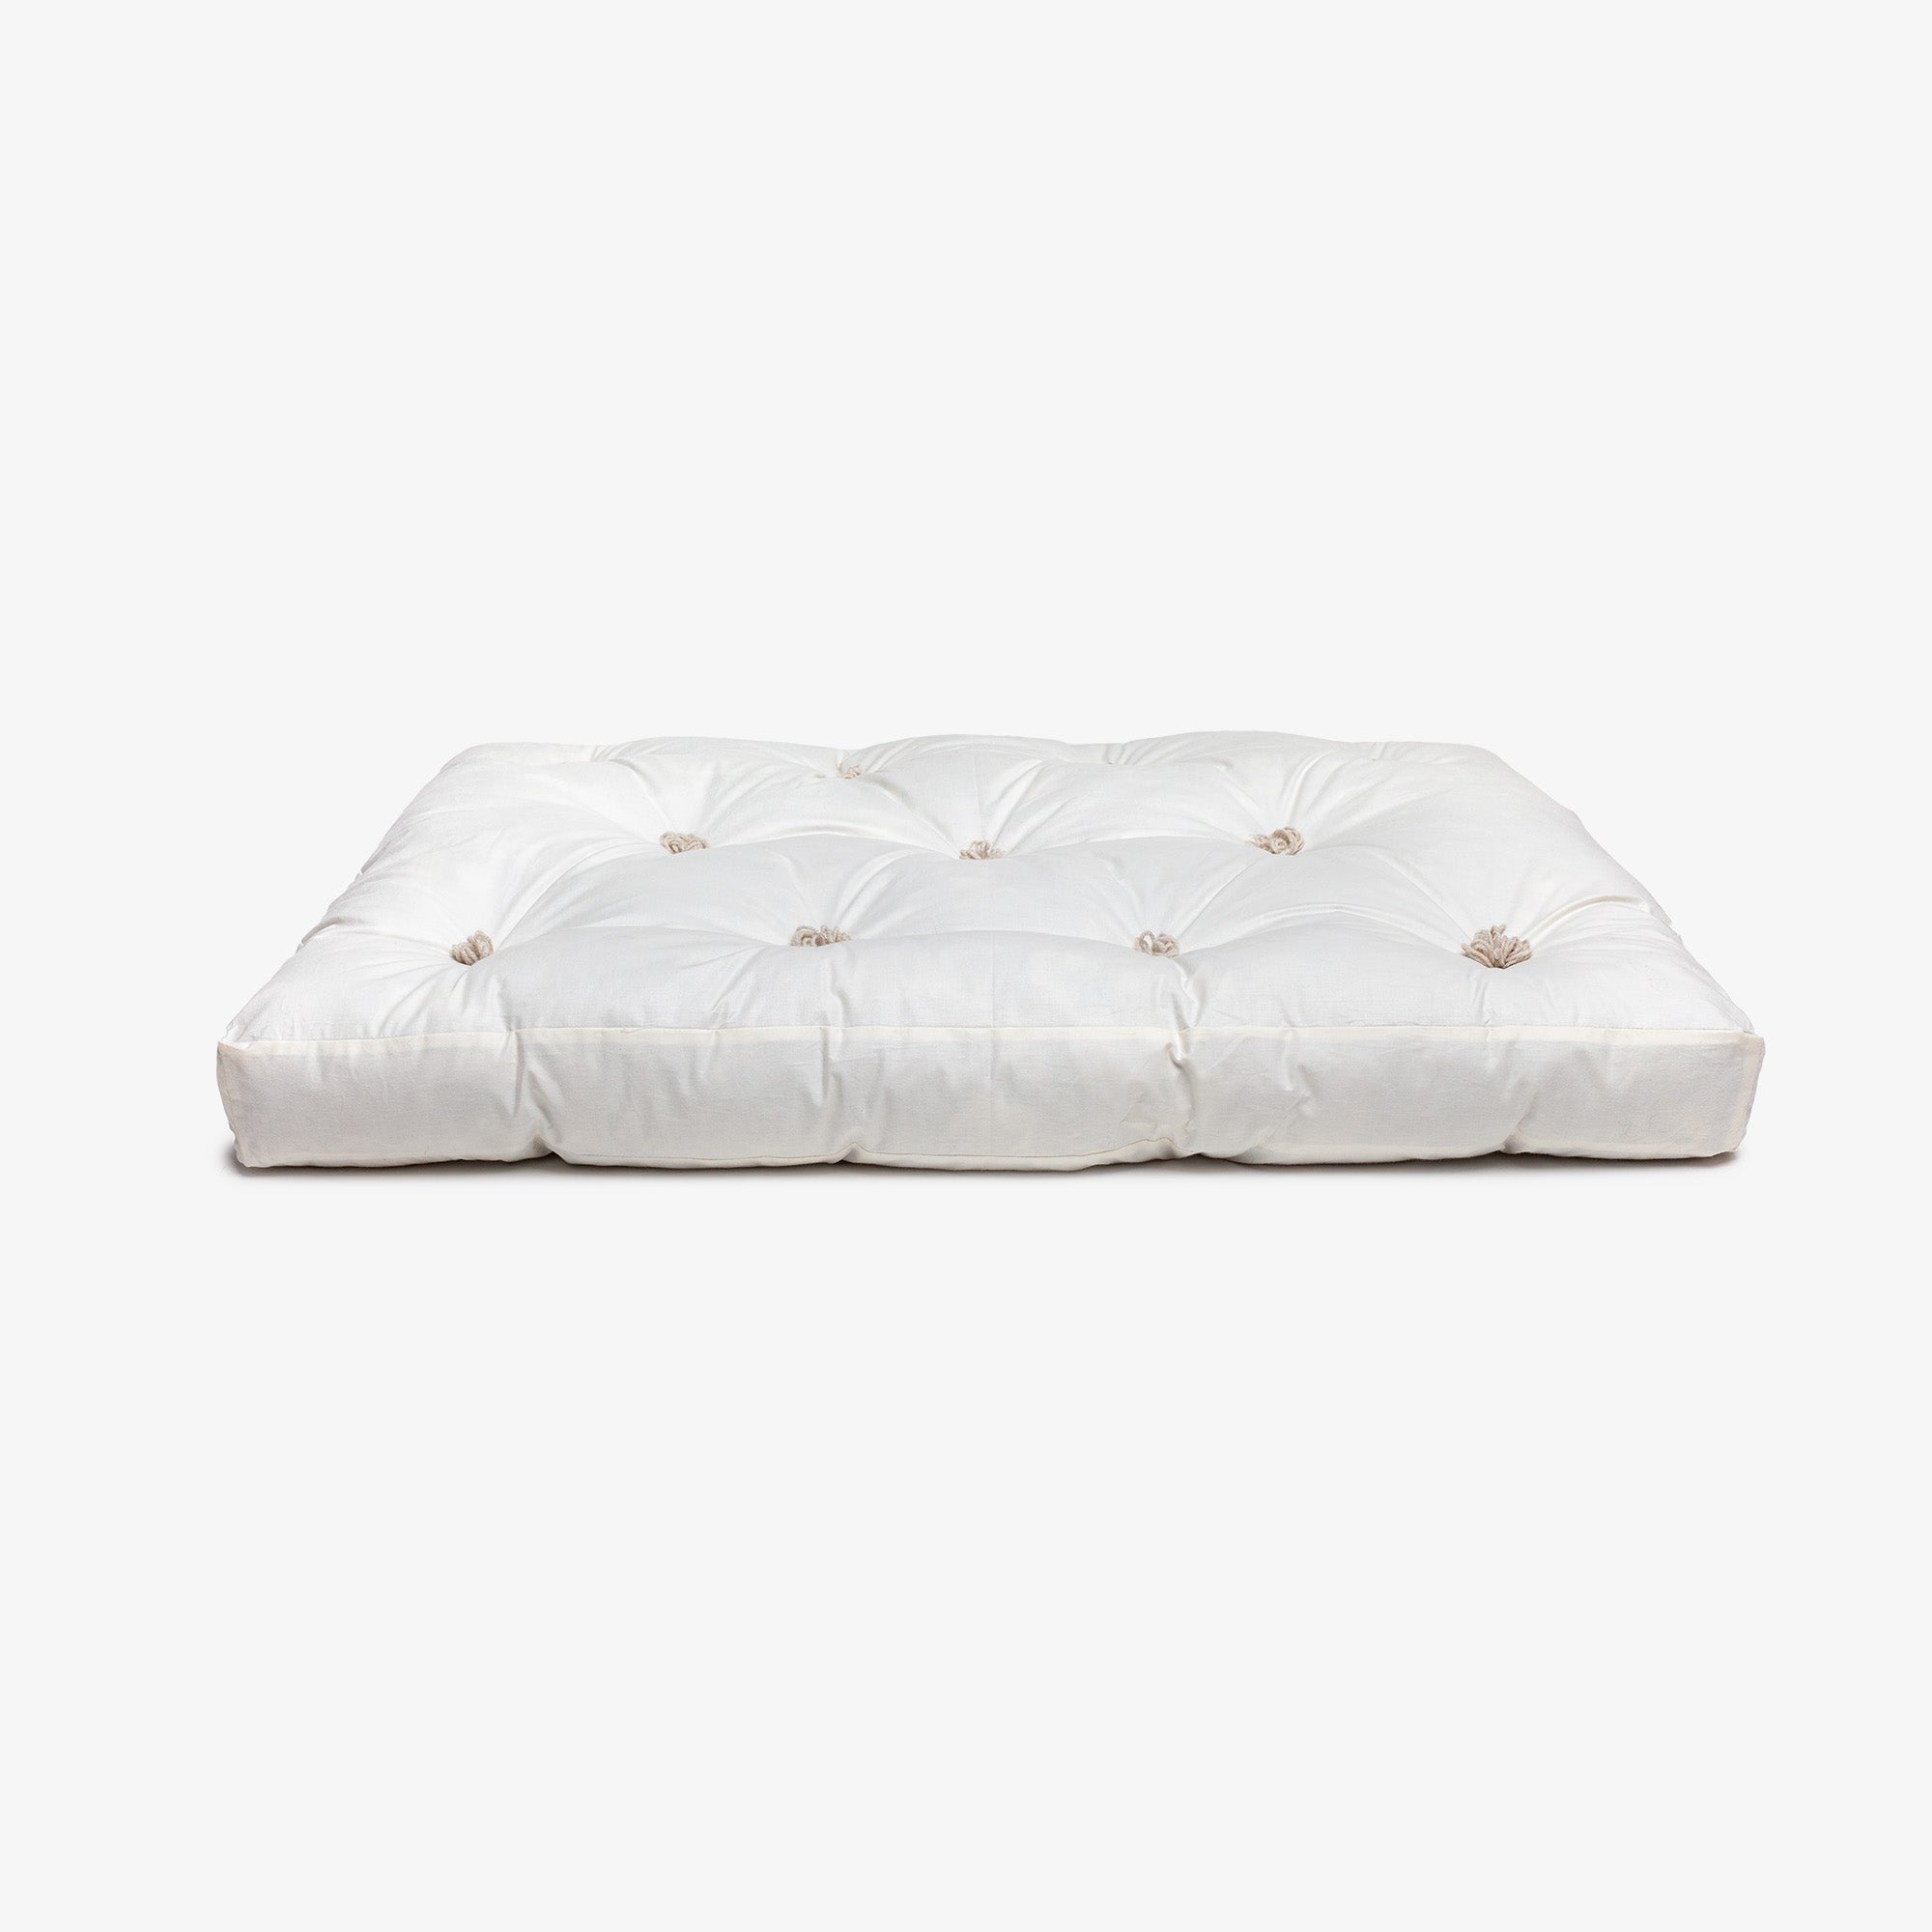 Handmade dog mattress filled with 100% alpaca fibre